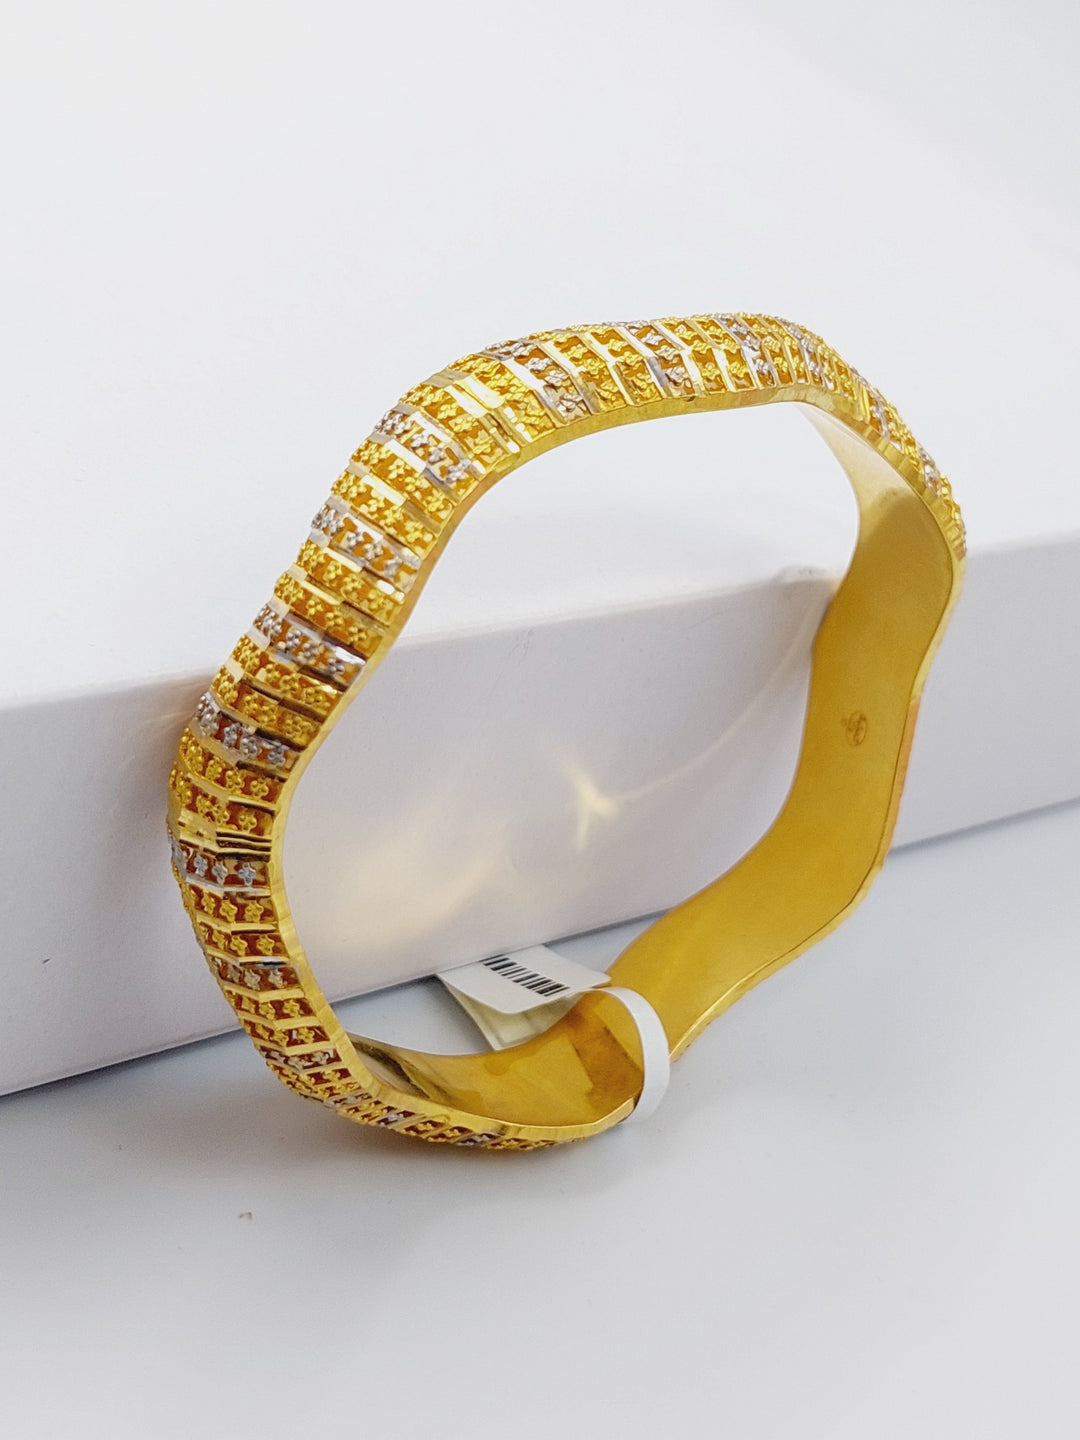 21K Gold Colored Kuwaiti Bangle by Saeed Jewelry - Image 5